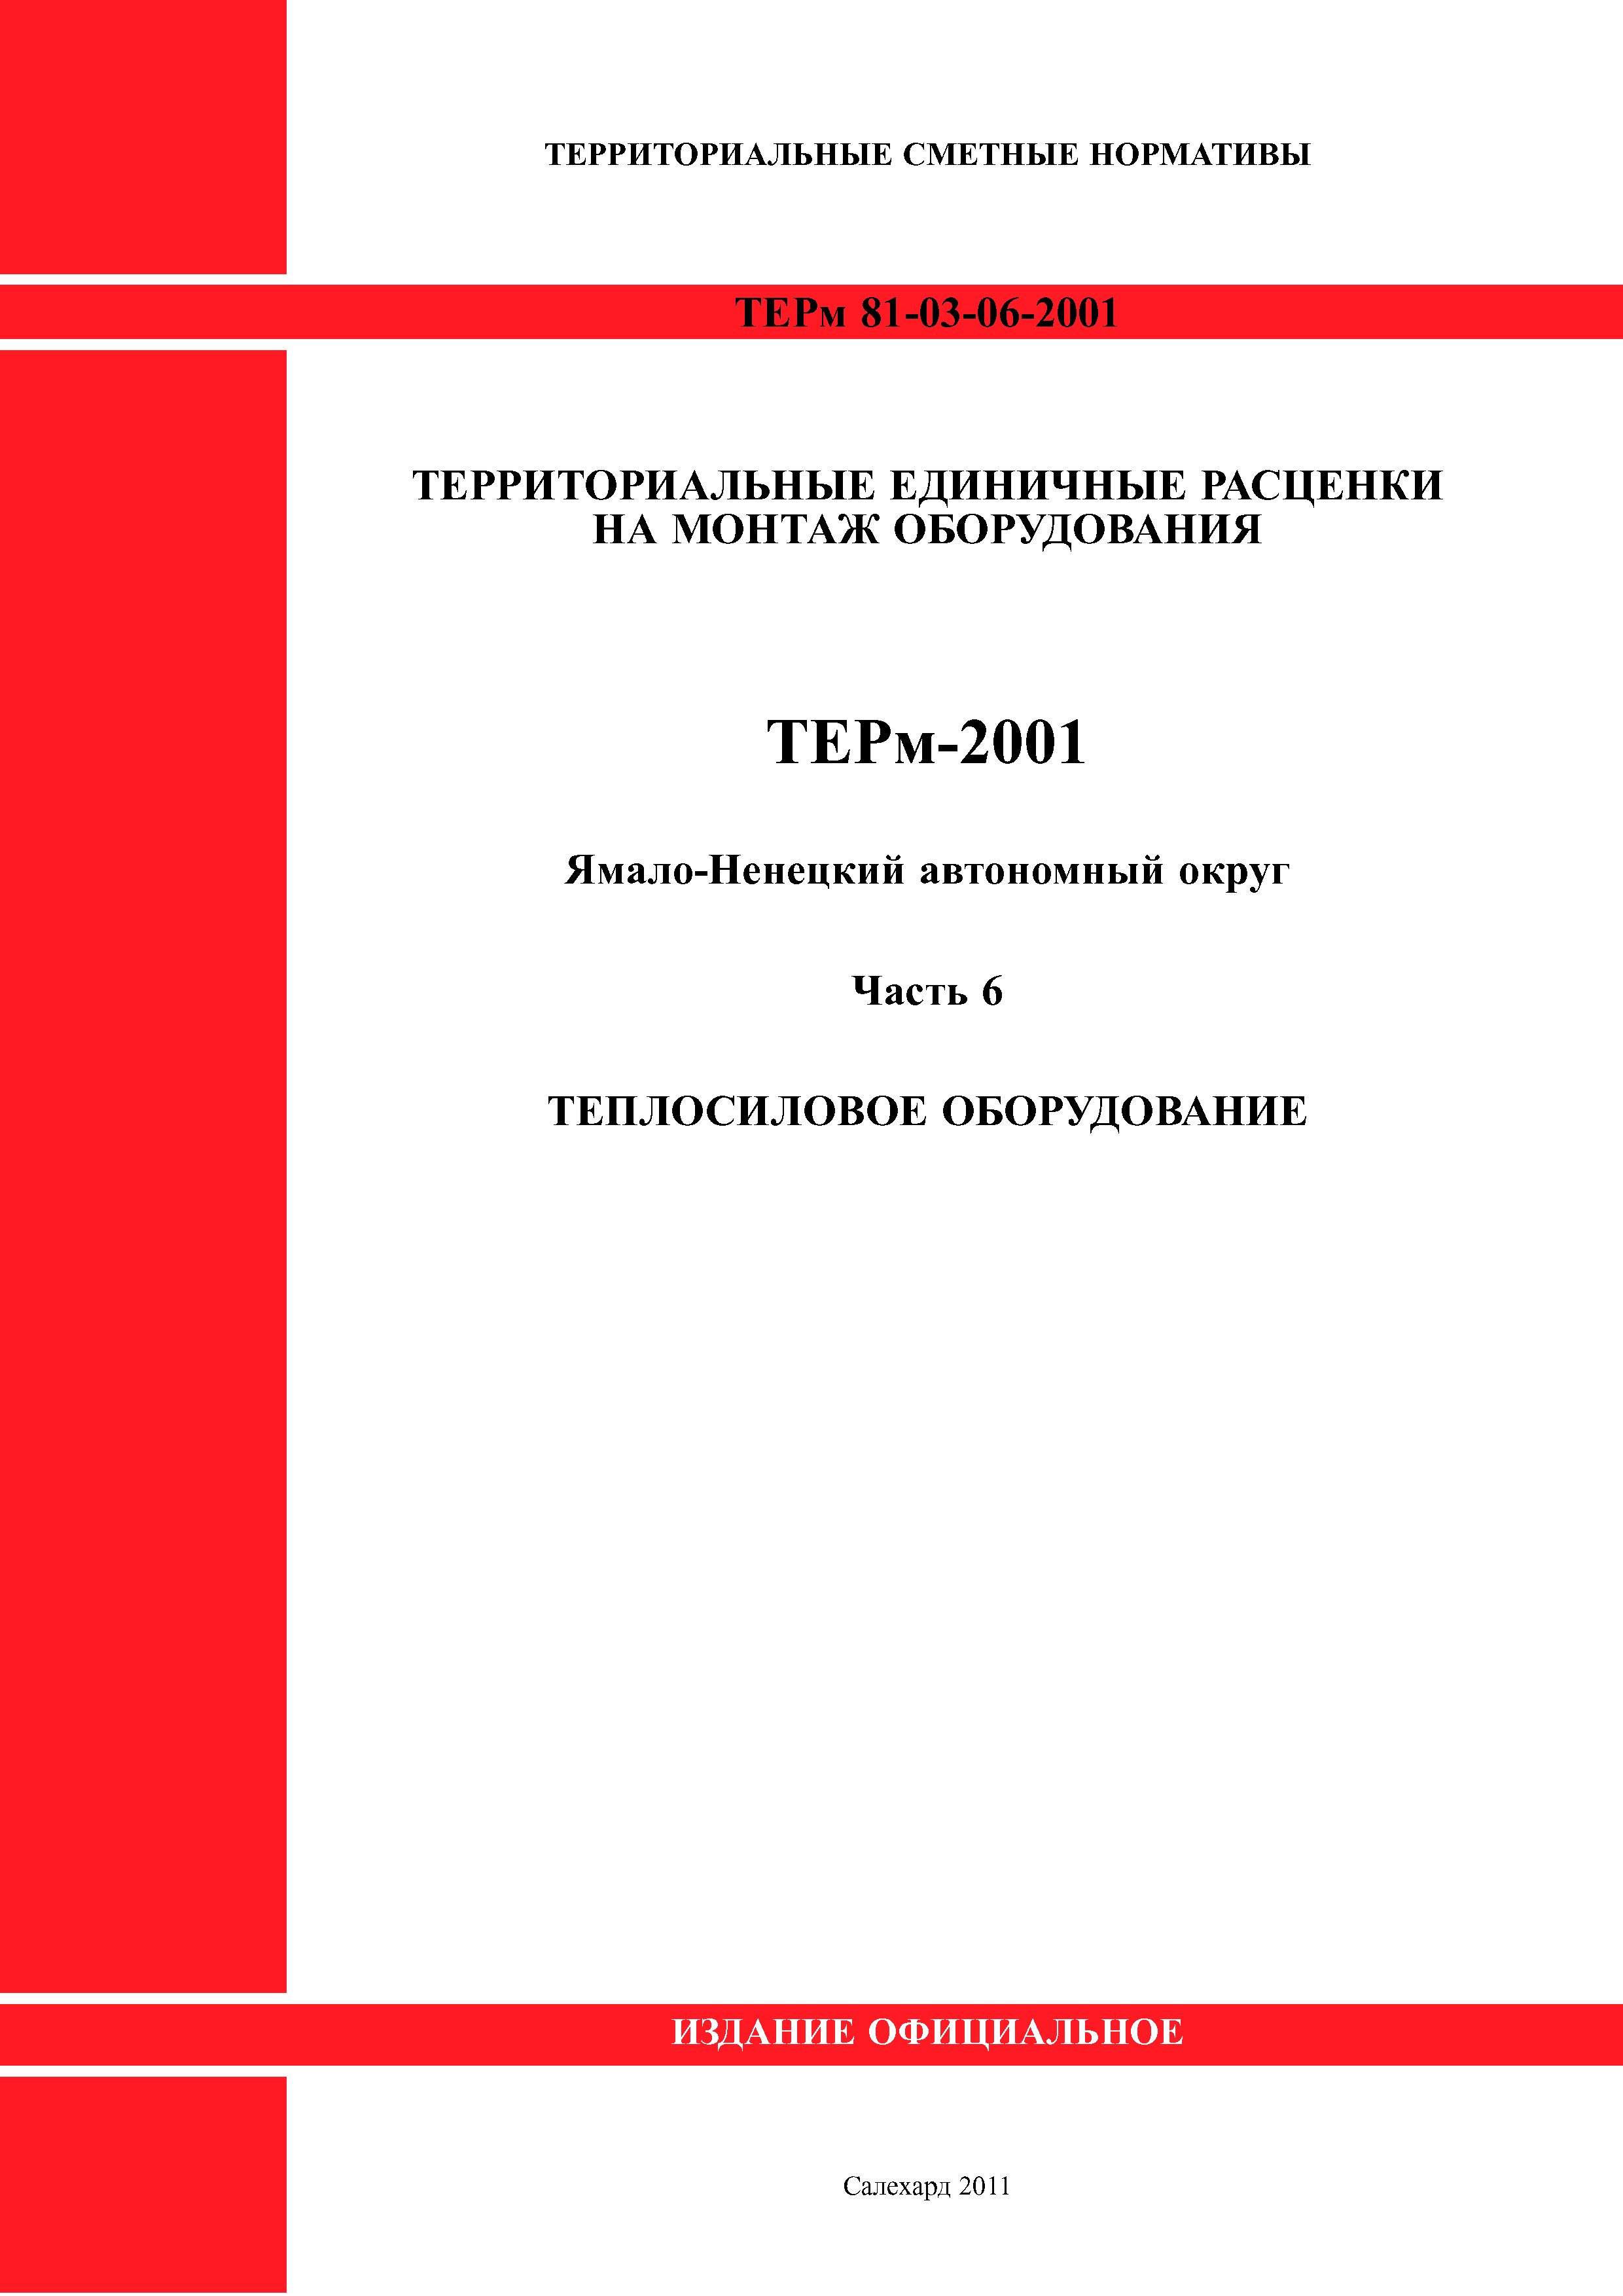 ТЕРм Ямало-Ненецкий автономный округ 06-2001